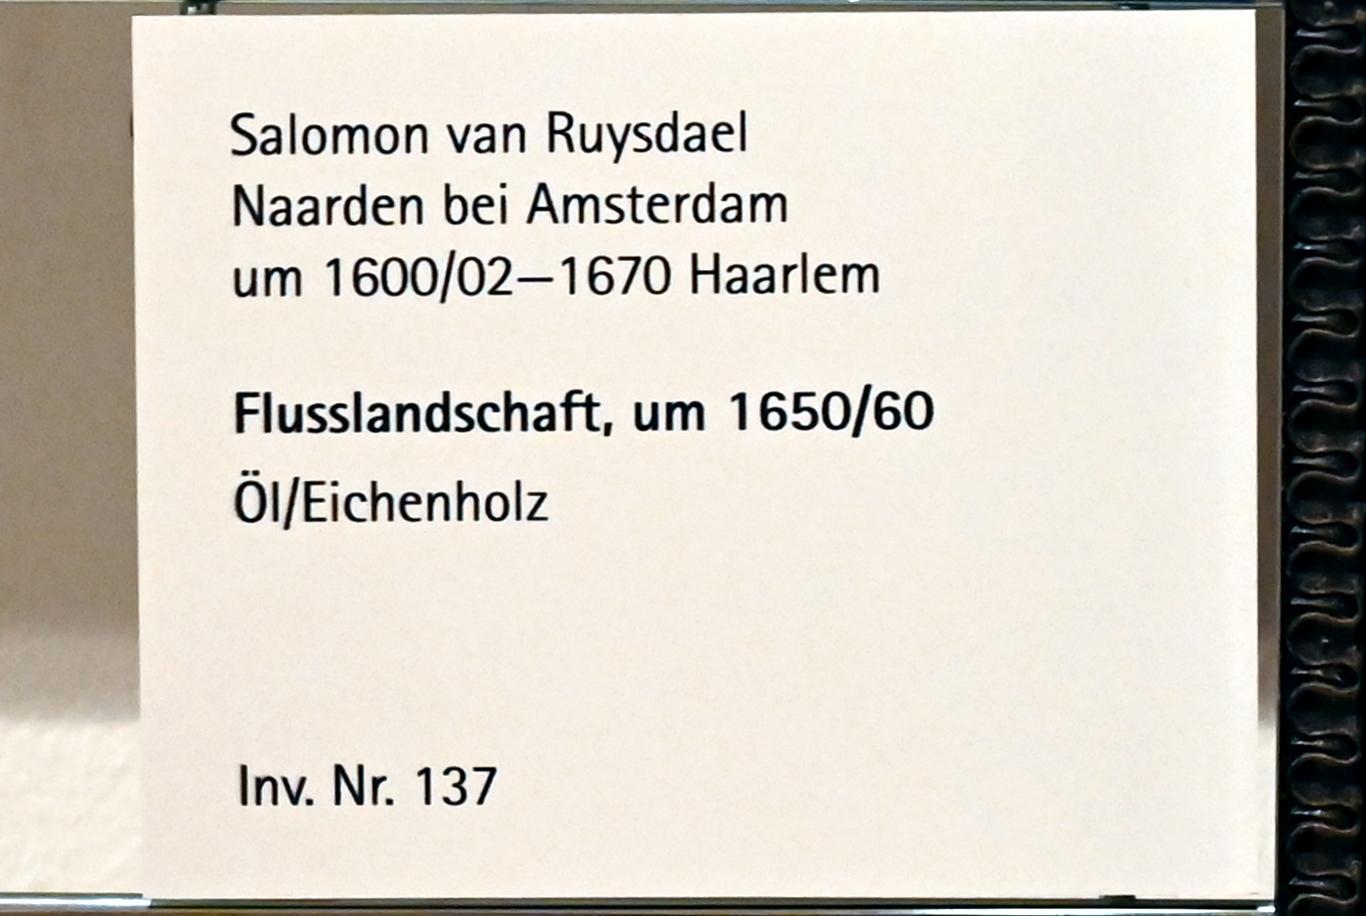 Salomon van Ruysdael (1631–1665), Flusslandschaft, Mainz, Landesmuseum, Schaudepot, um 1650–1660, Bild 2/2